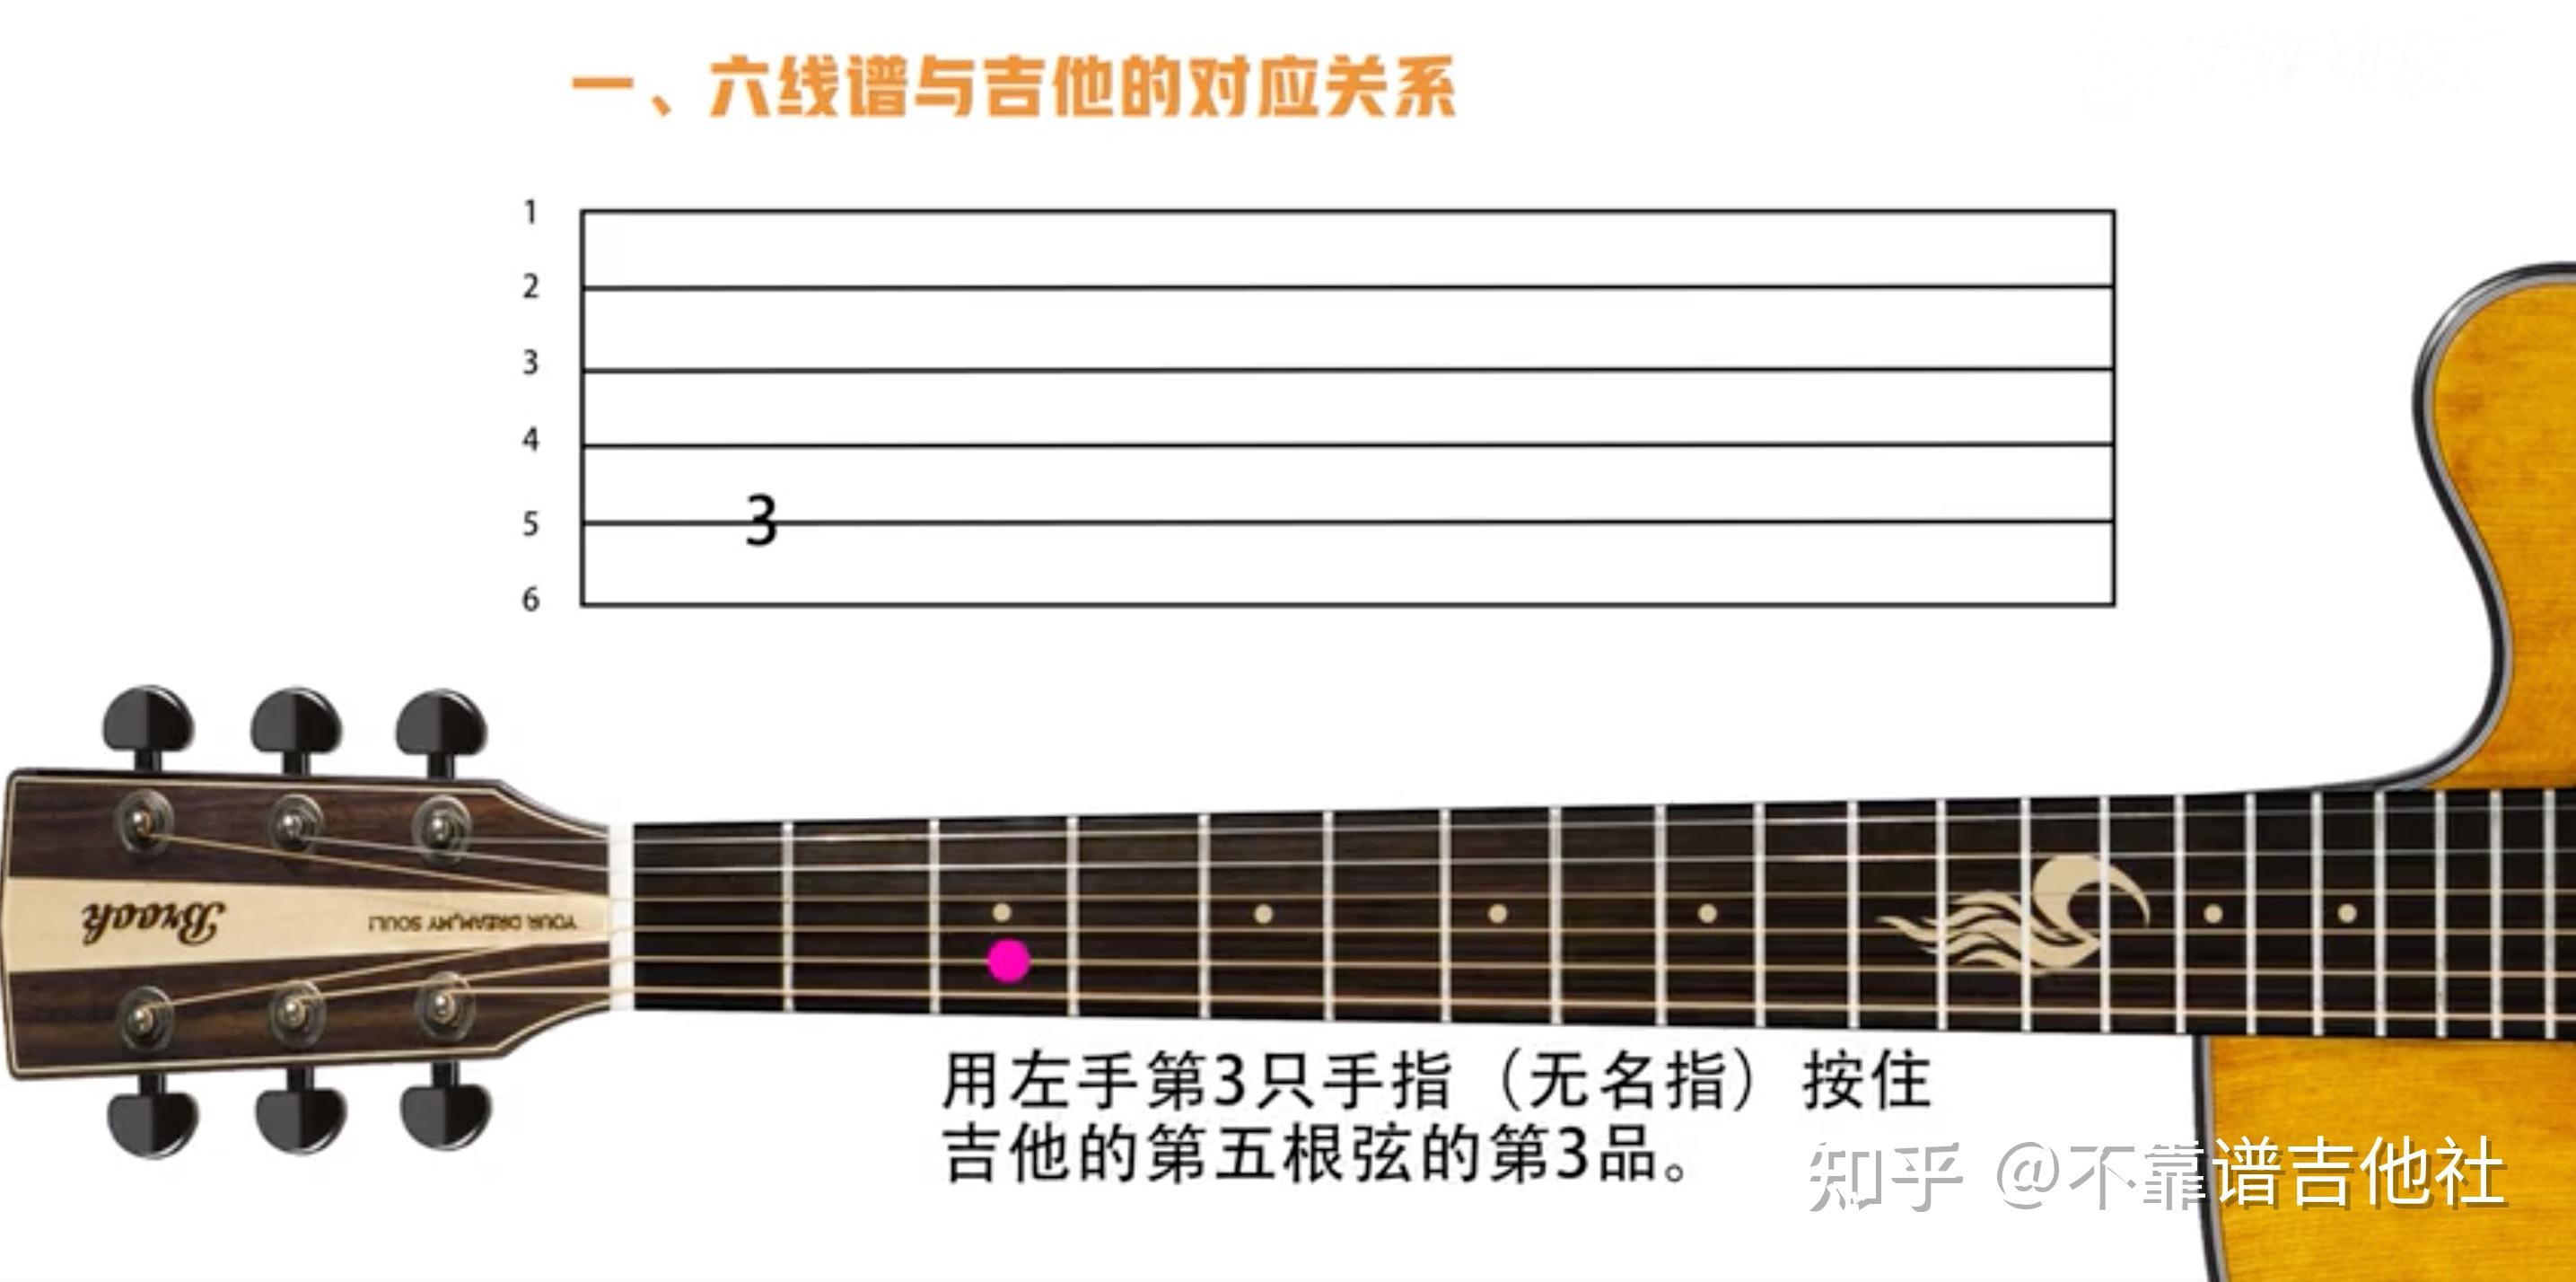 吉他谱中的括号代表什么意思 吉他谱中的括号什么意思 - 指弹吉他 - 吉他社